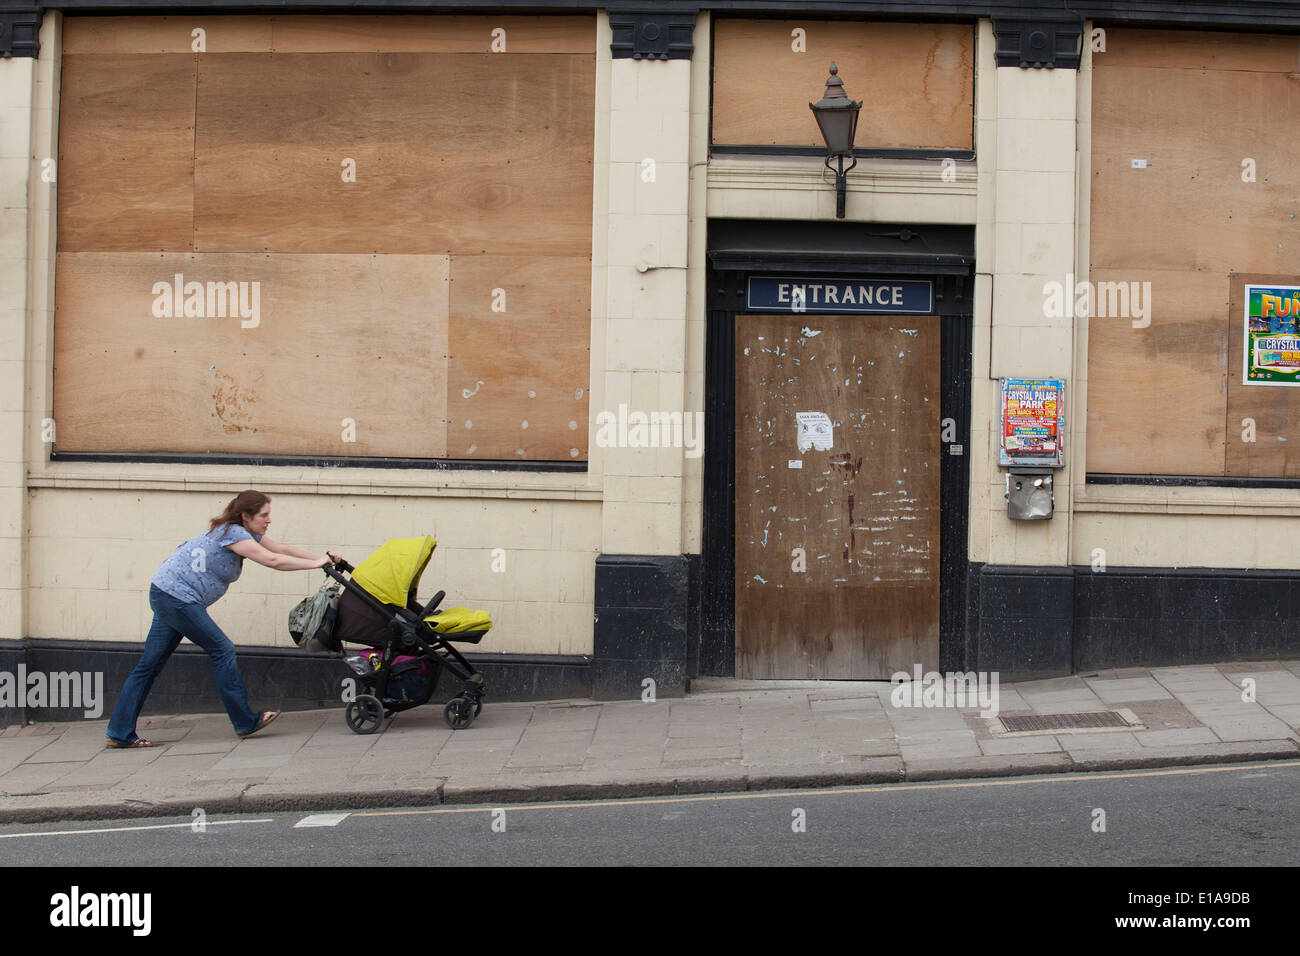 Femme pousse un landau un passé fermé barricadèrent pub. Signes de la poursuite du ralentissement économique et de la récession au Royaume-Uni. Banque D'Images